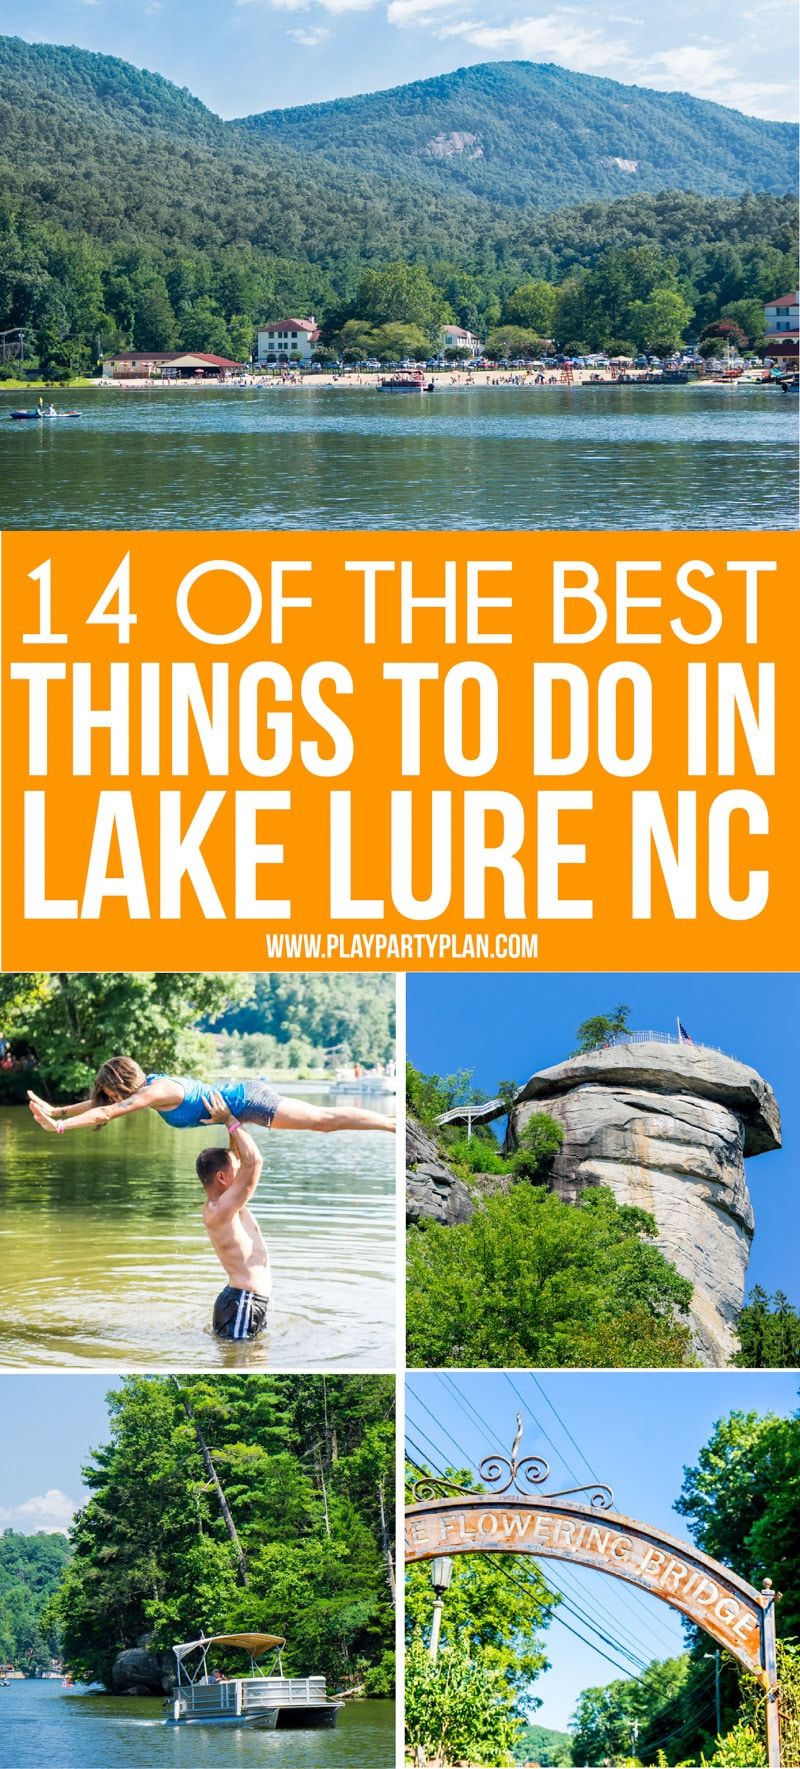 Lake Lure NC